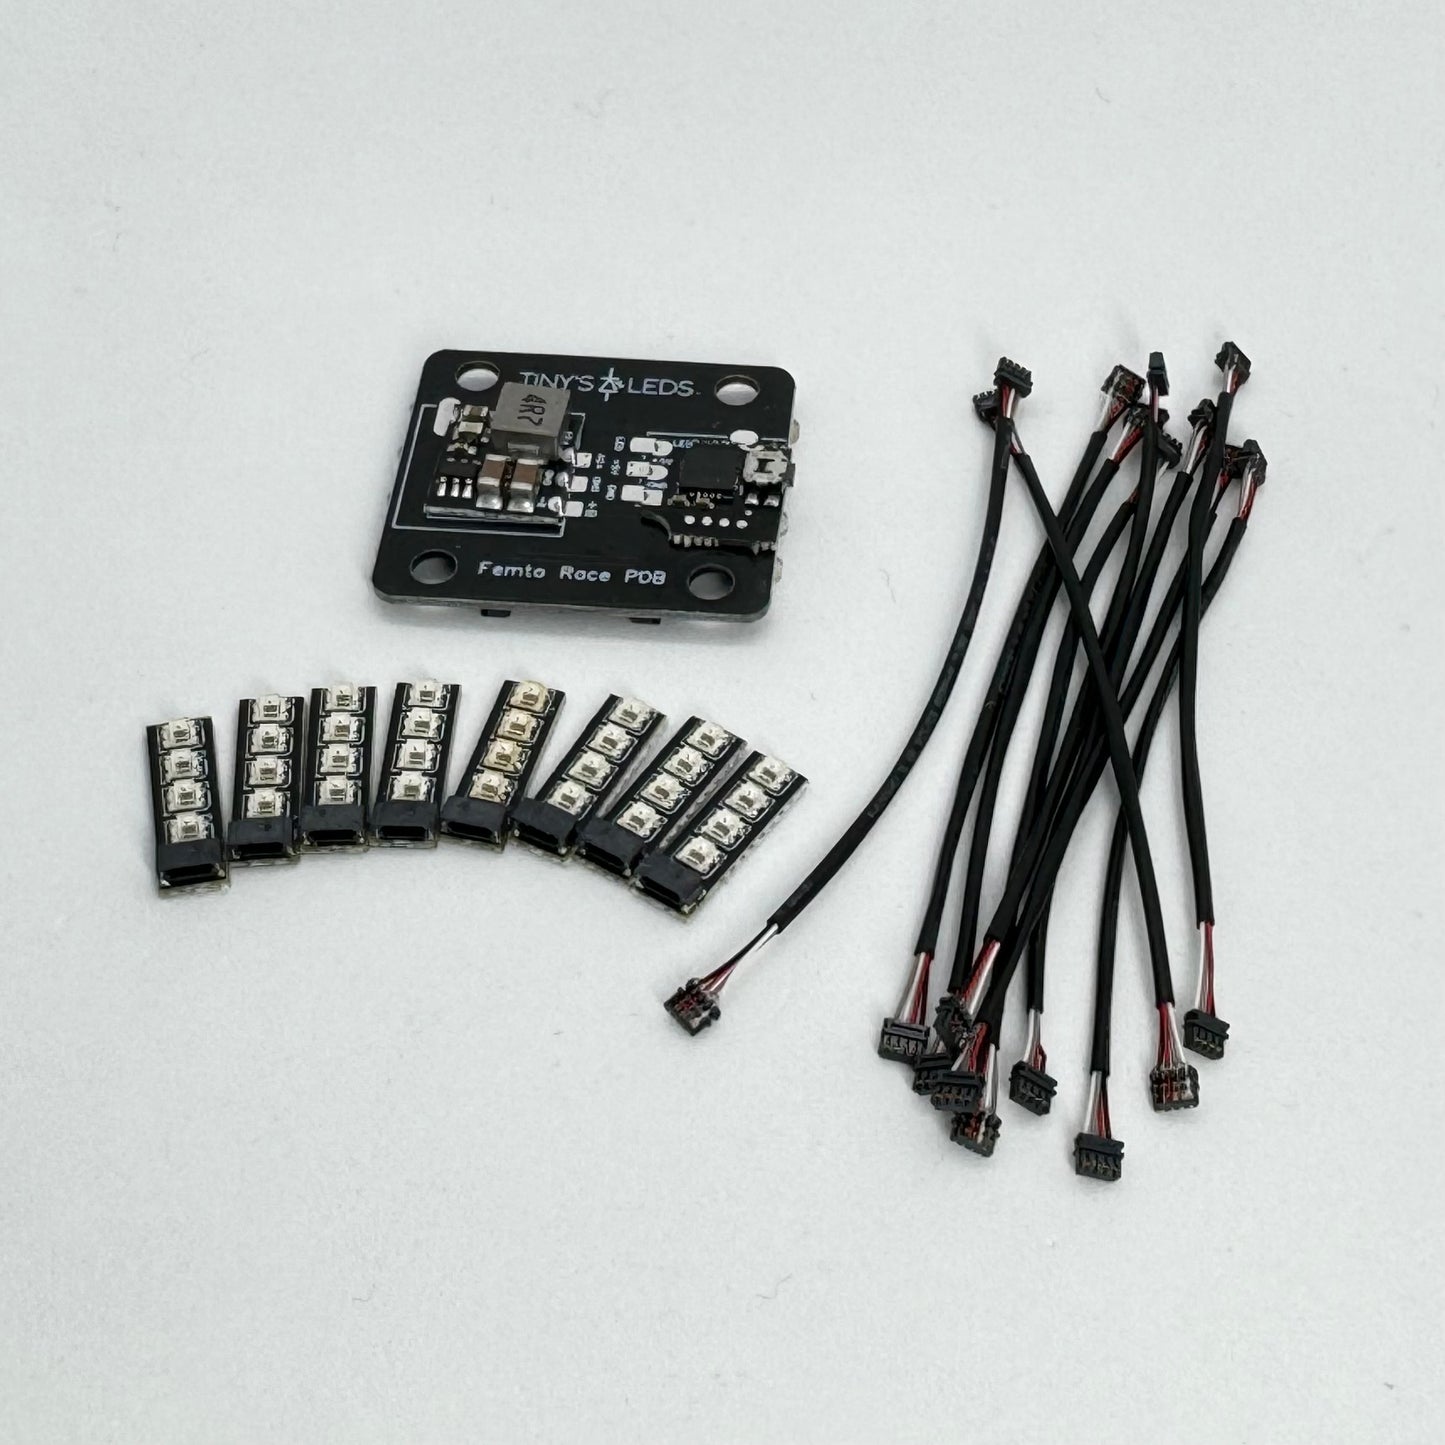 Femto Race LED Quad Kit (40 LEDs & Cables)